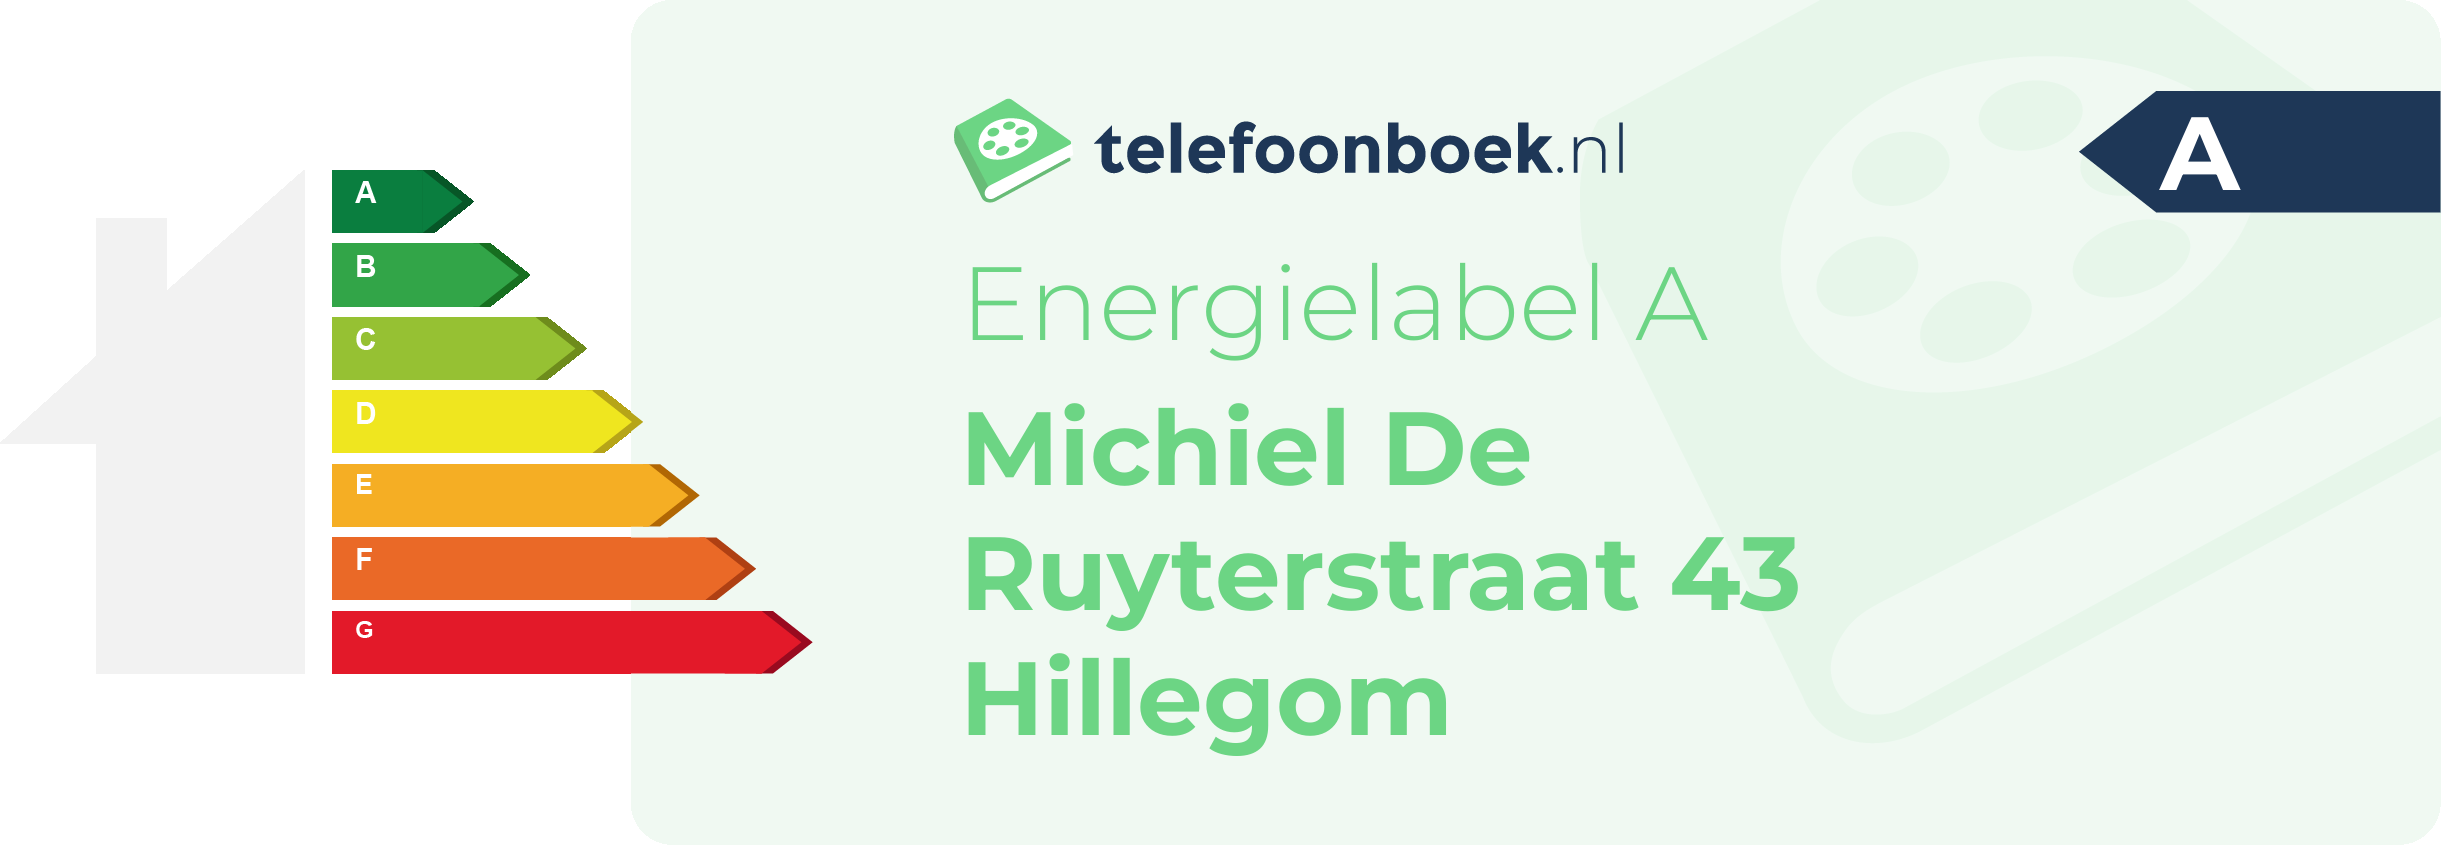 Energielabel Michiel De Ruyterstraat 43 Hillegom